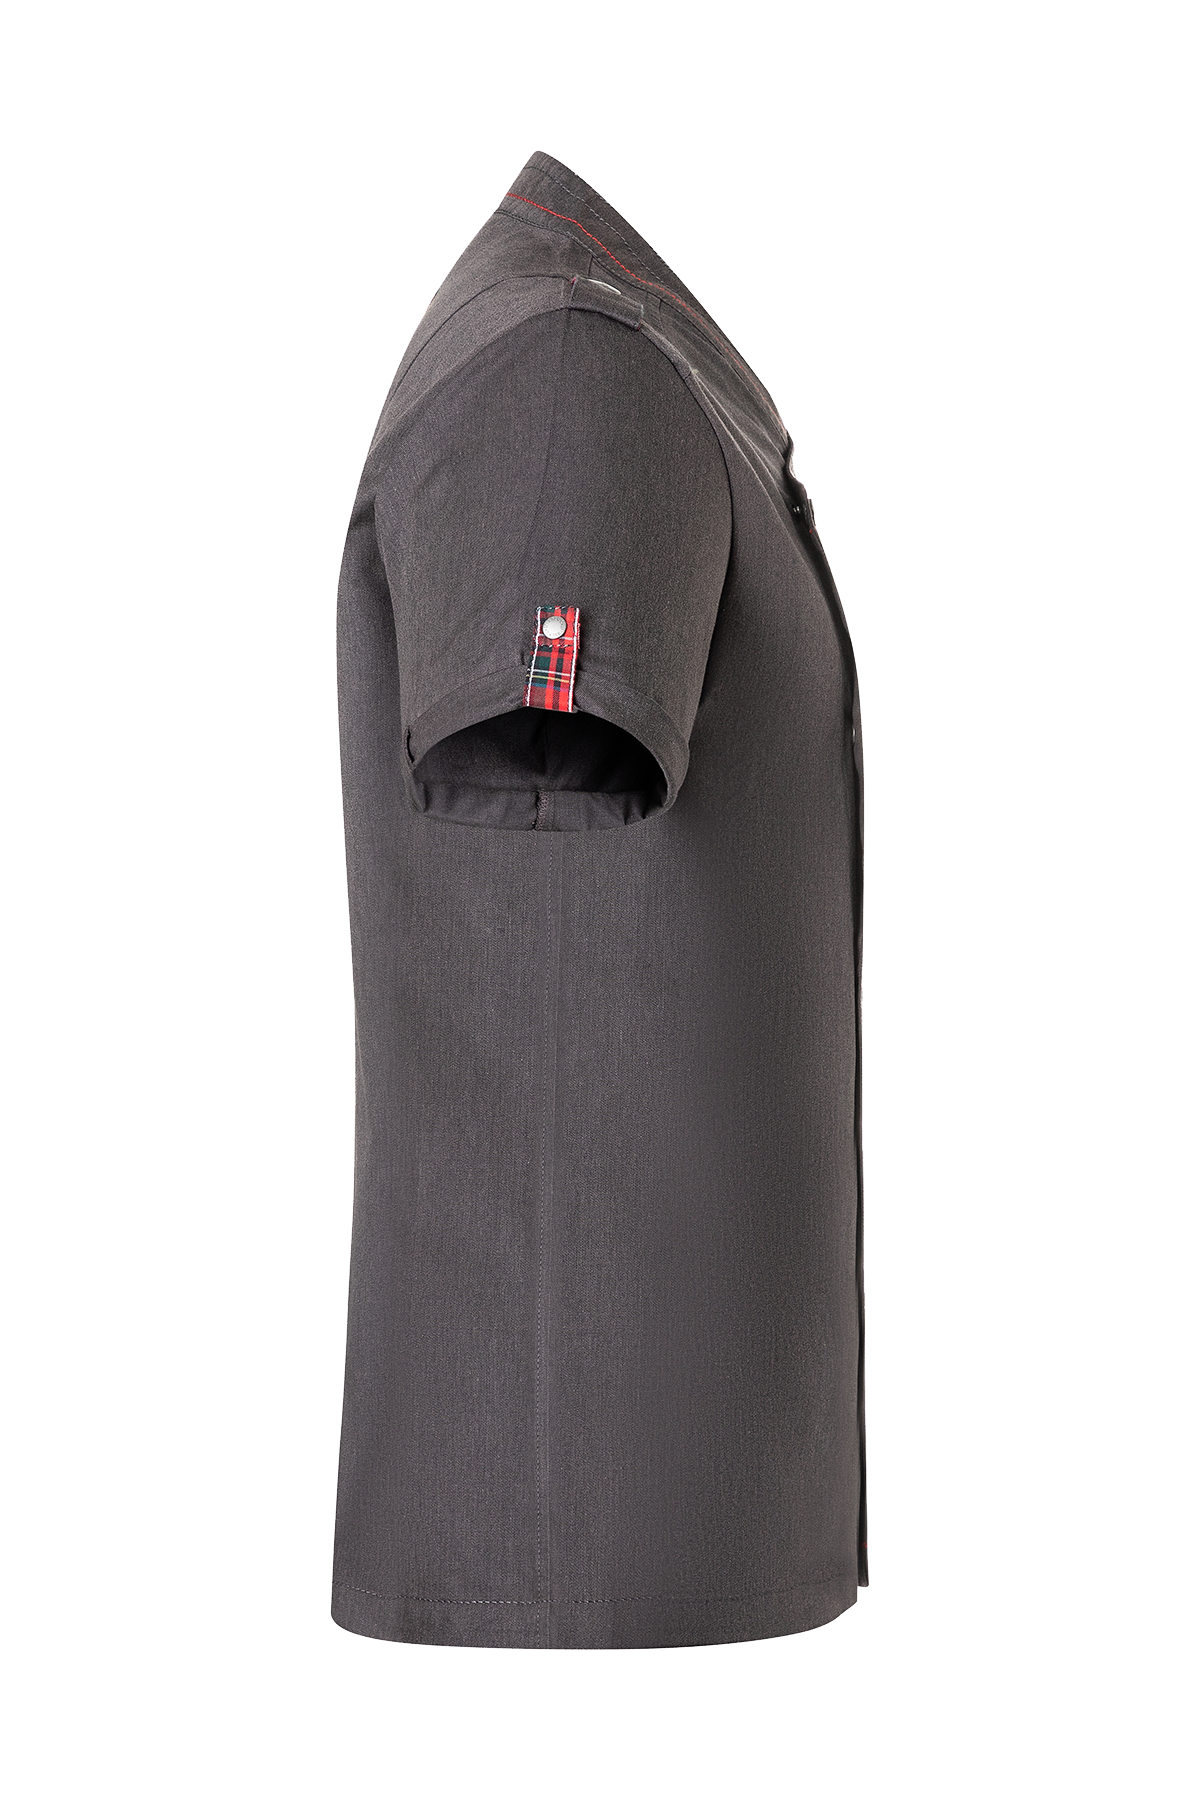 Short-Sleeve Men's Chef Jacket Denim - ROCK CHEF®